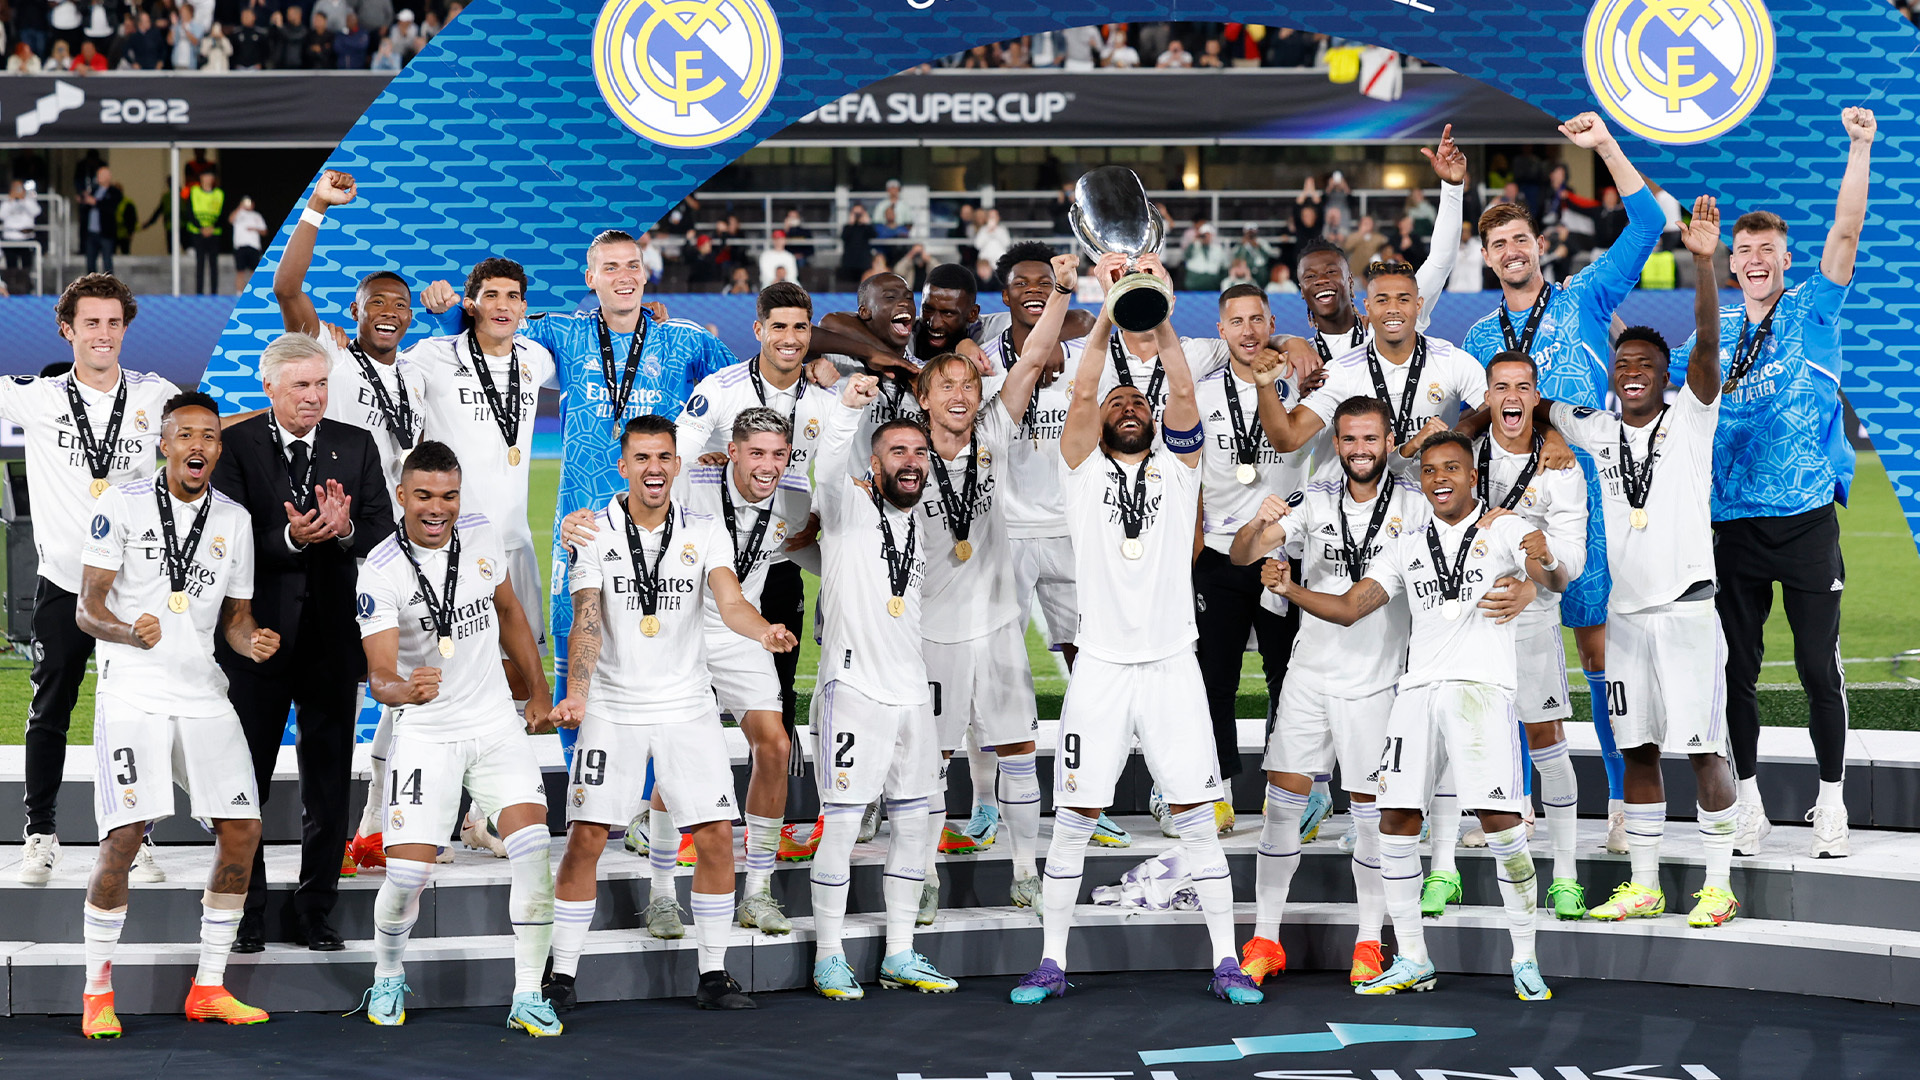 Elenco do Real Madrid comemora conquista da Supercopa da Uefa segurando troféu. (Foto: Reprodução Twitter)